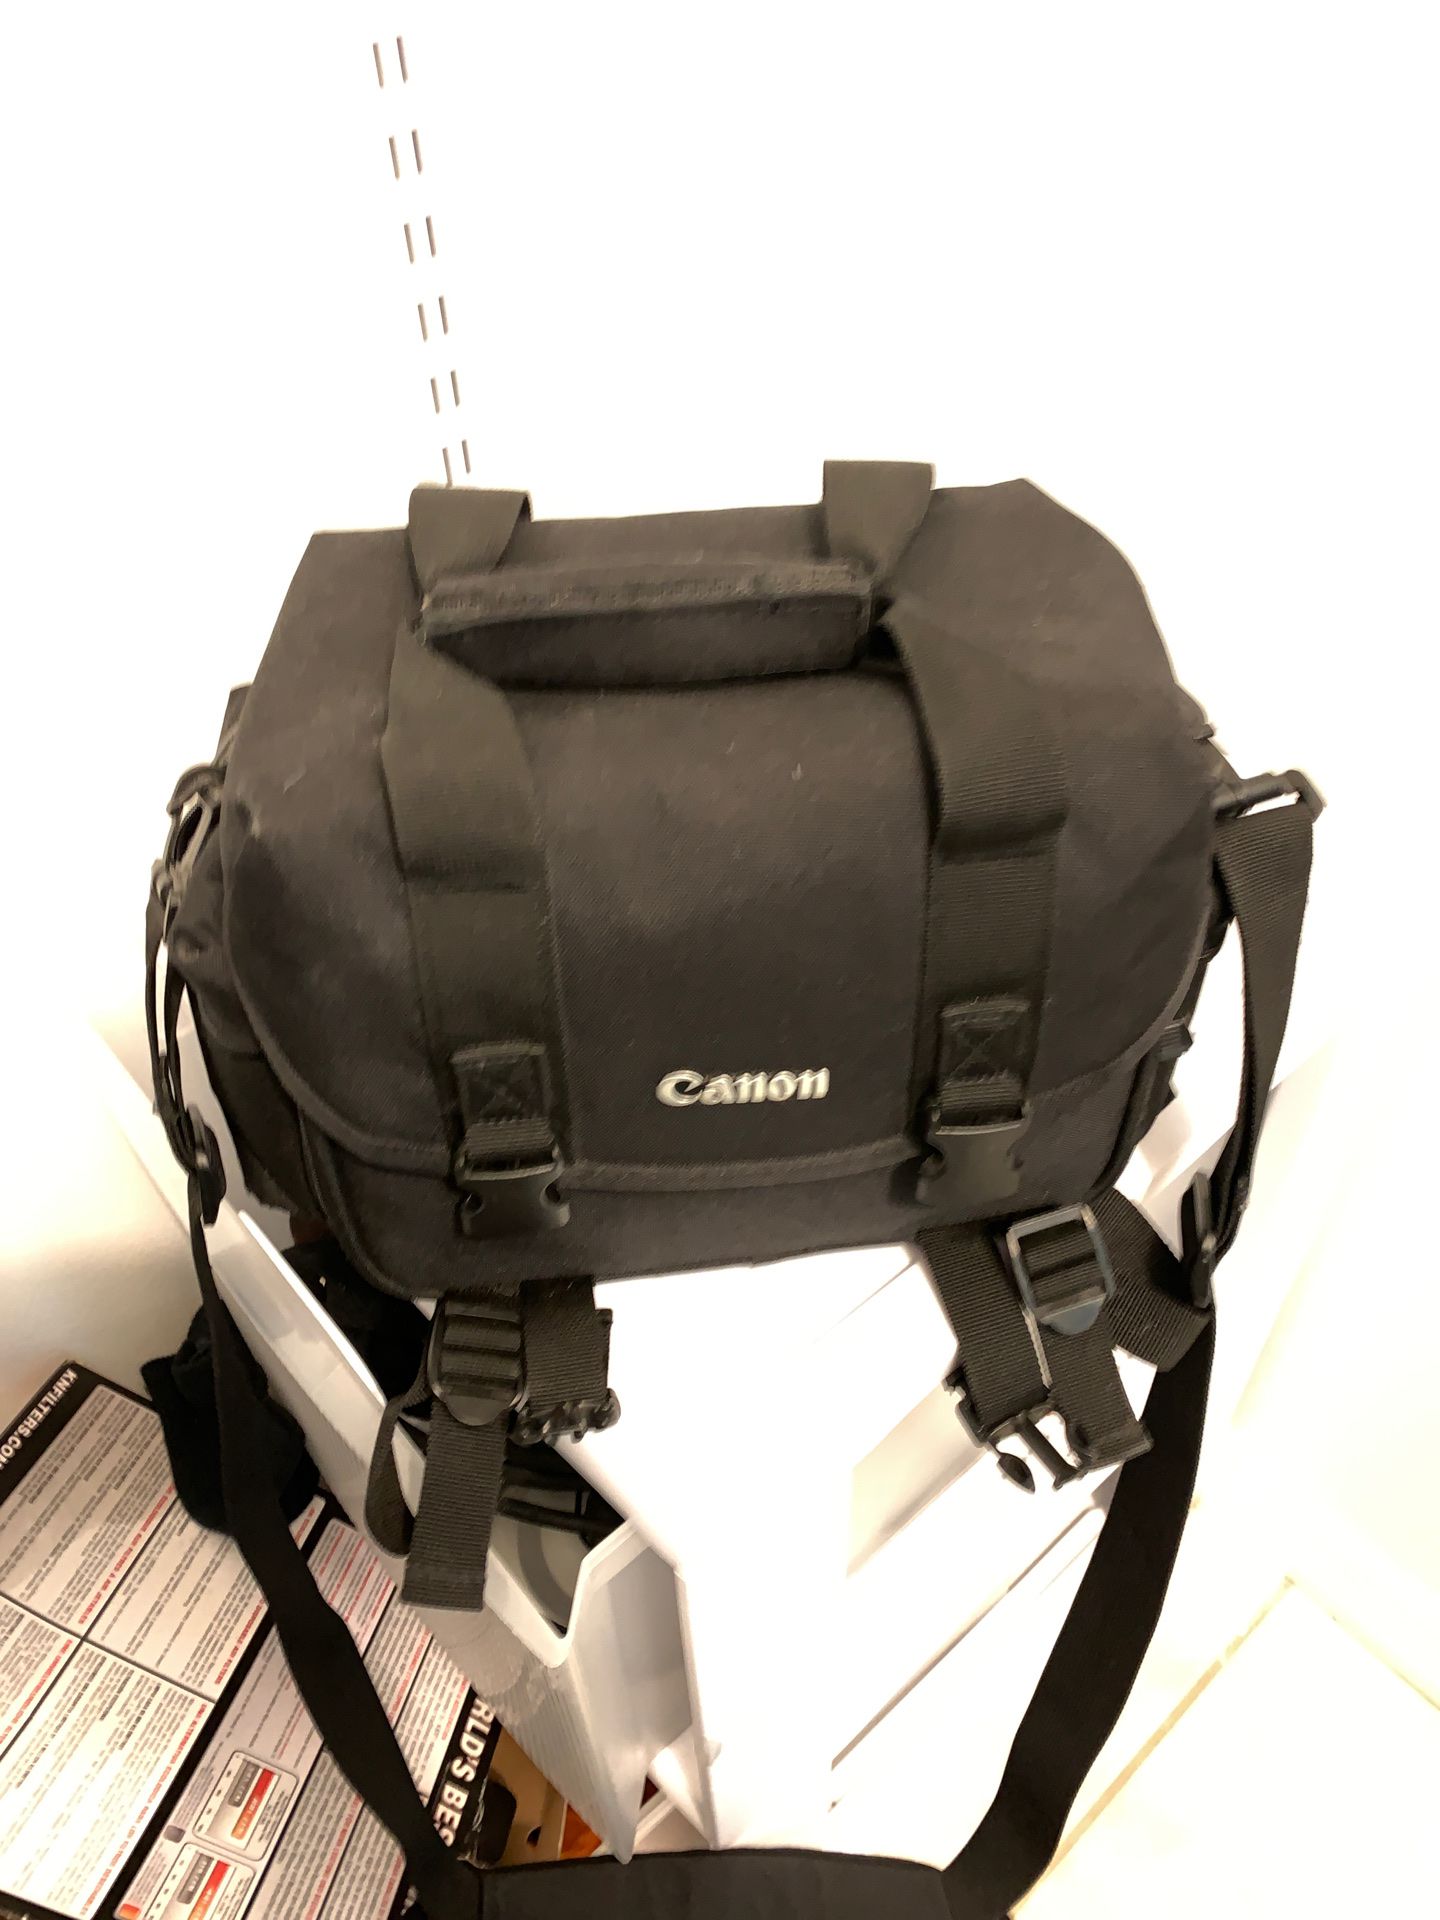 Canon camera bag